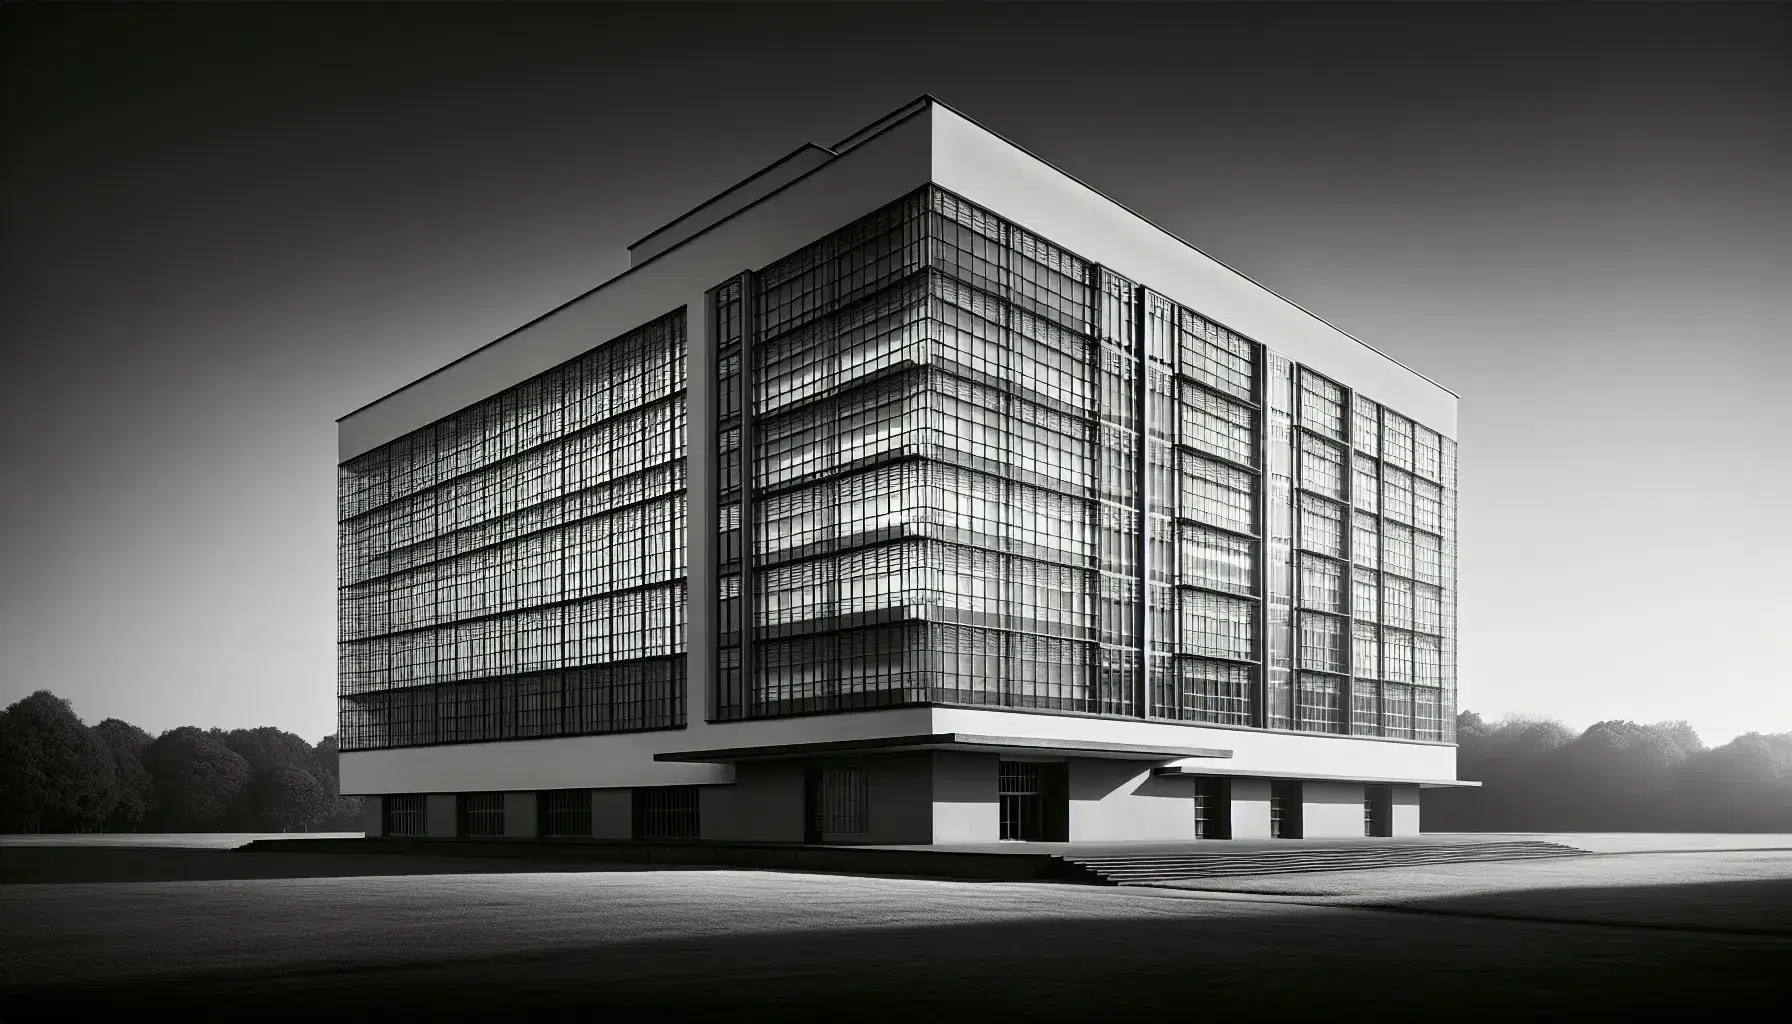 Edificio Bauhaus a Dessau in bianco e nero, con facciata vetrata simmetrica, torre laterale e tettoia sporgente, circondato da prato.